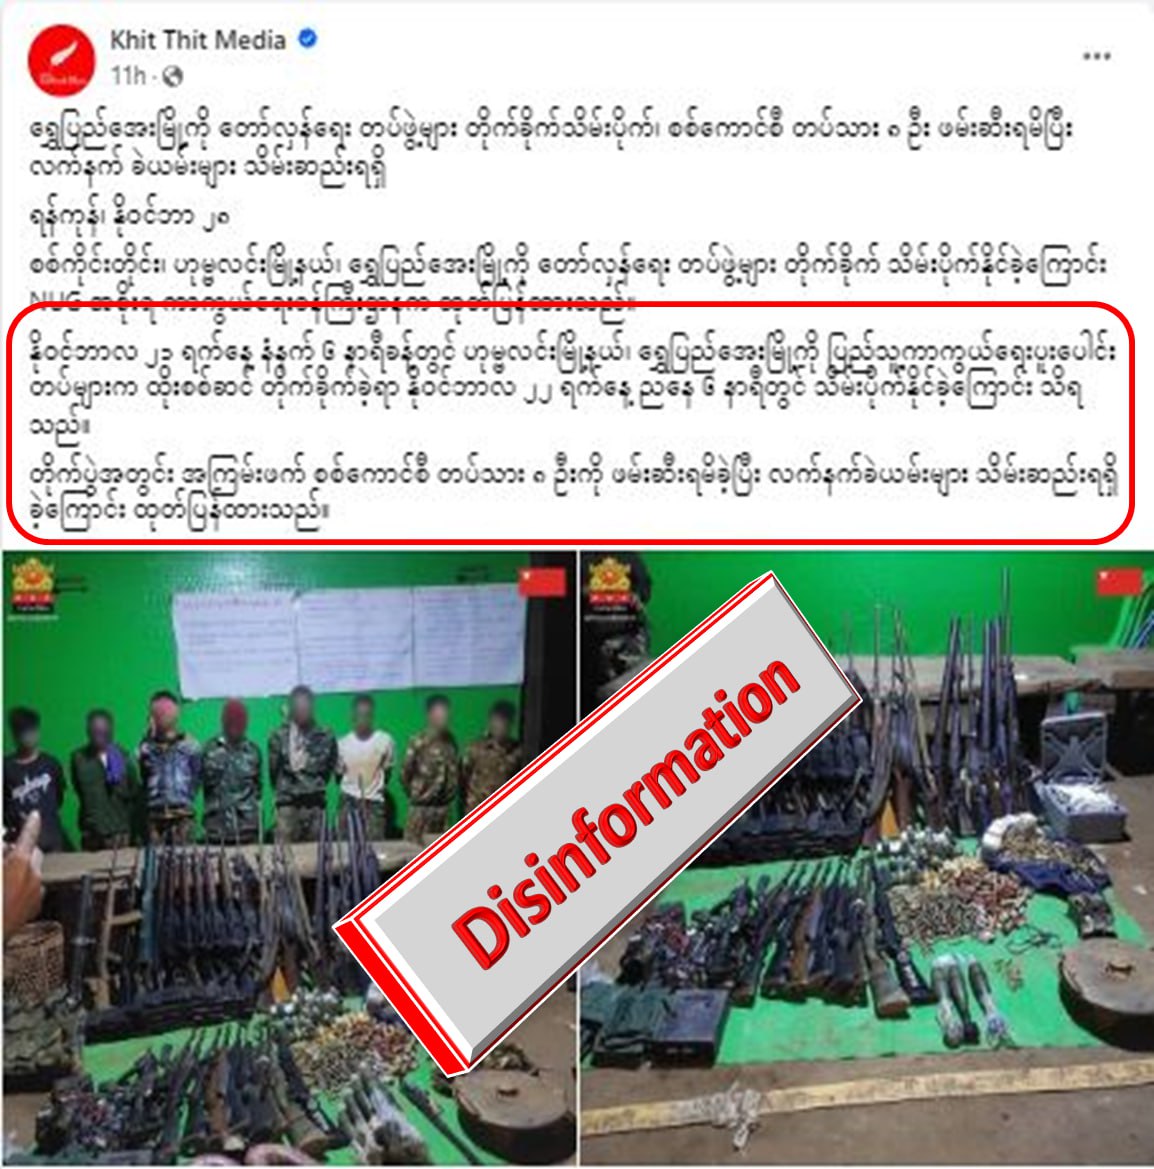 ရွှေပြည်အေးတွင် လုံခြုံရေးတပ်ဖွဲ့ဝင် ၈ ဦး ဖမ်းဆီးရမိခဲ့တယ်လို့ Khit Thit မှ သတင်းအမှားရေး